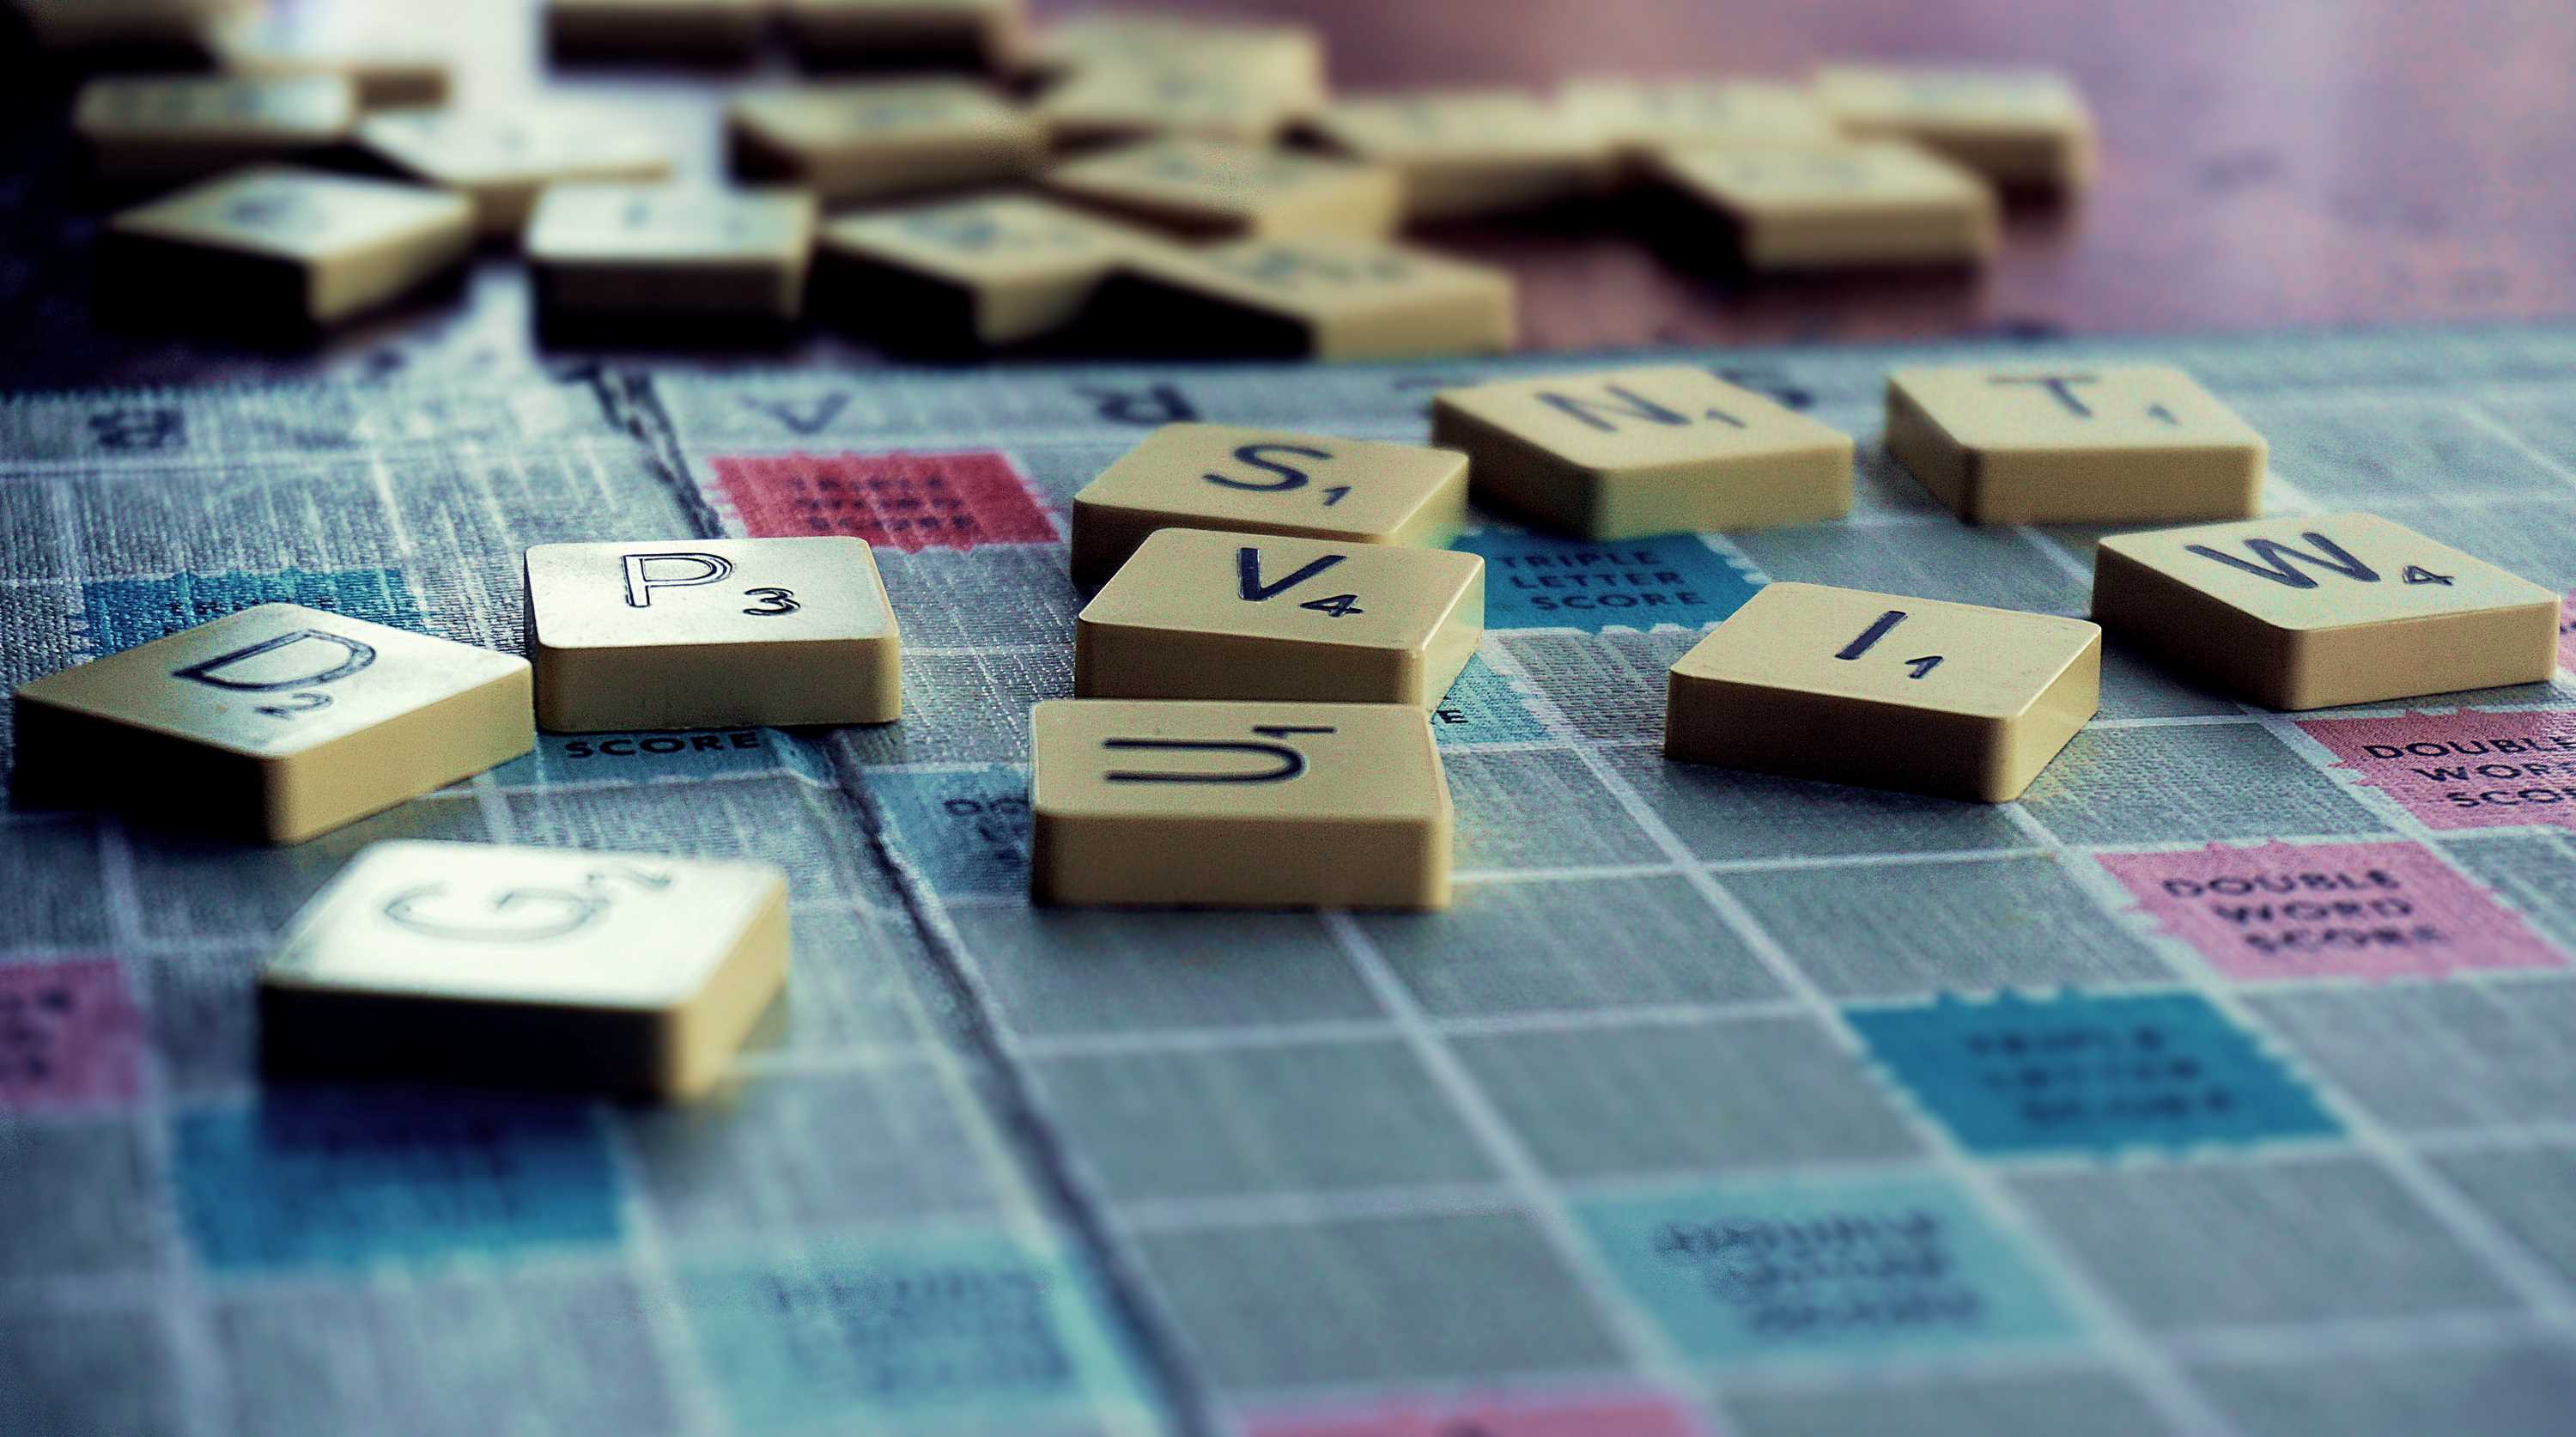 La imagen muestra unas fichas de un juego con letras desordenadas.